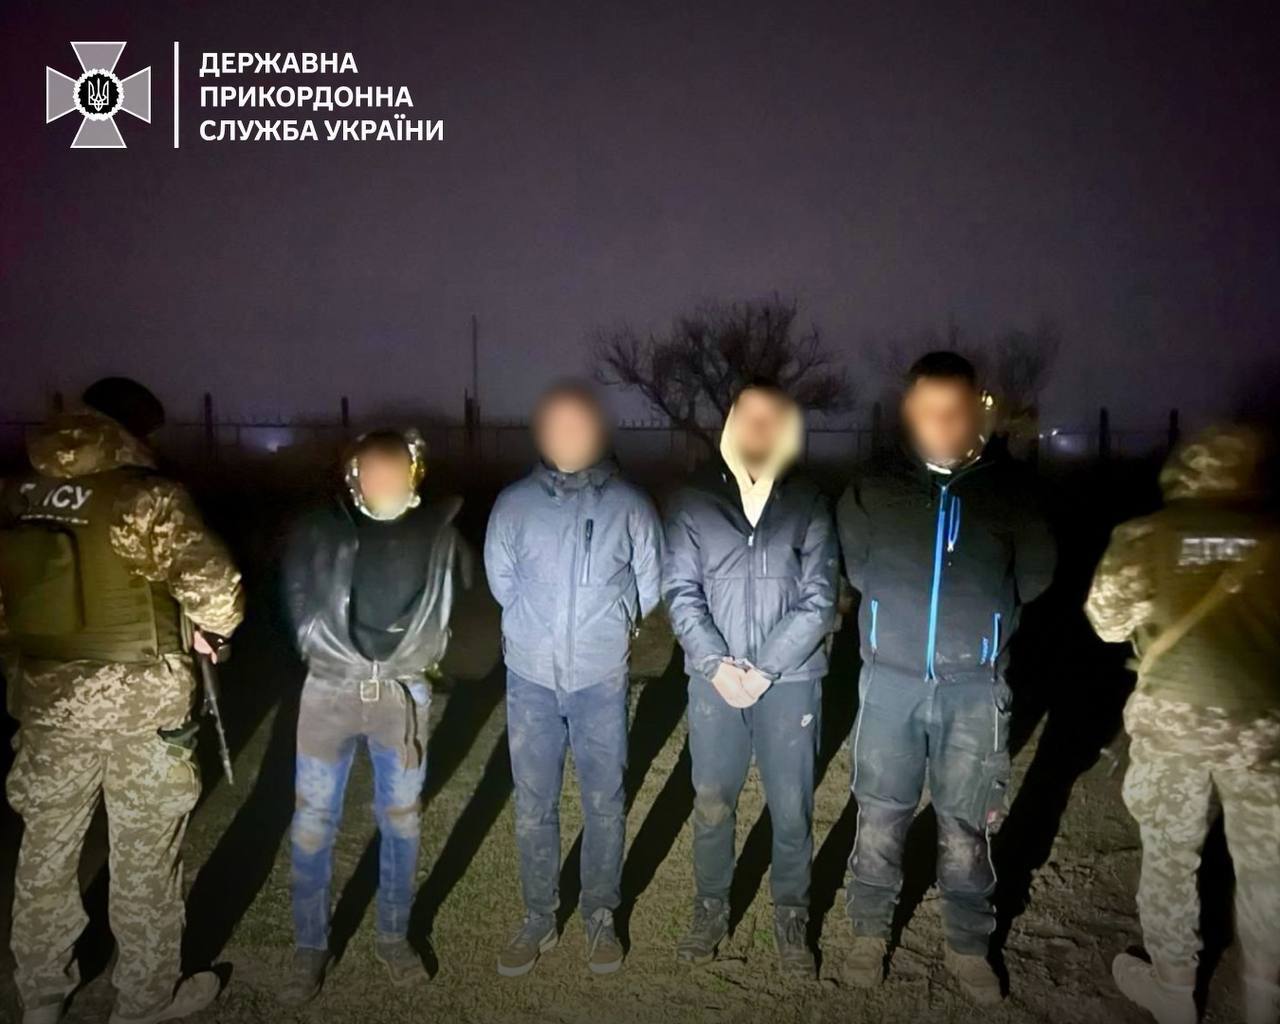 Вигадали "блискучий план": на Одещині чоловіки в ізотермічних ковдрах хотіли перетнути кордон, але  були спіймані. Фото